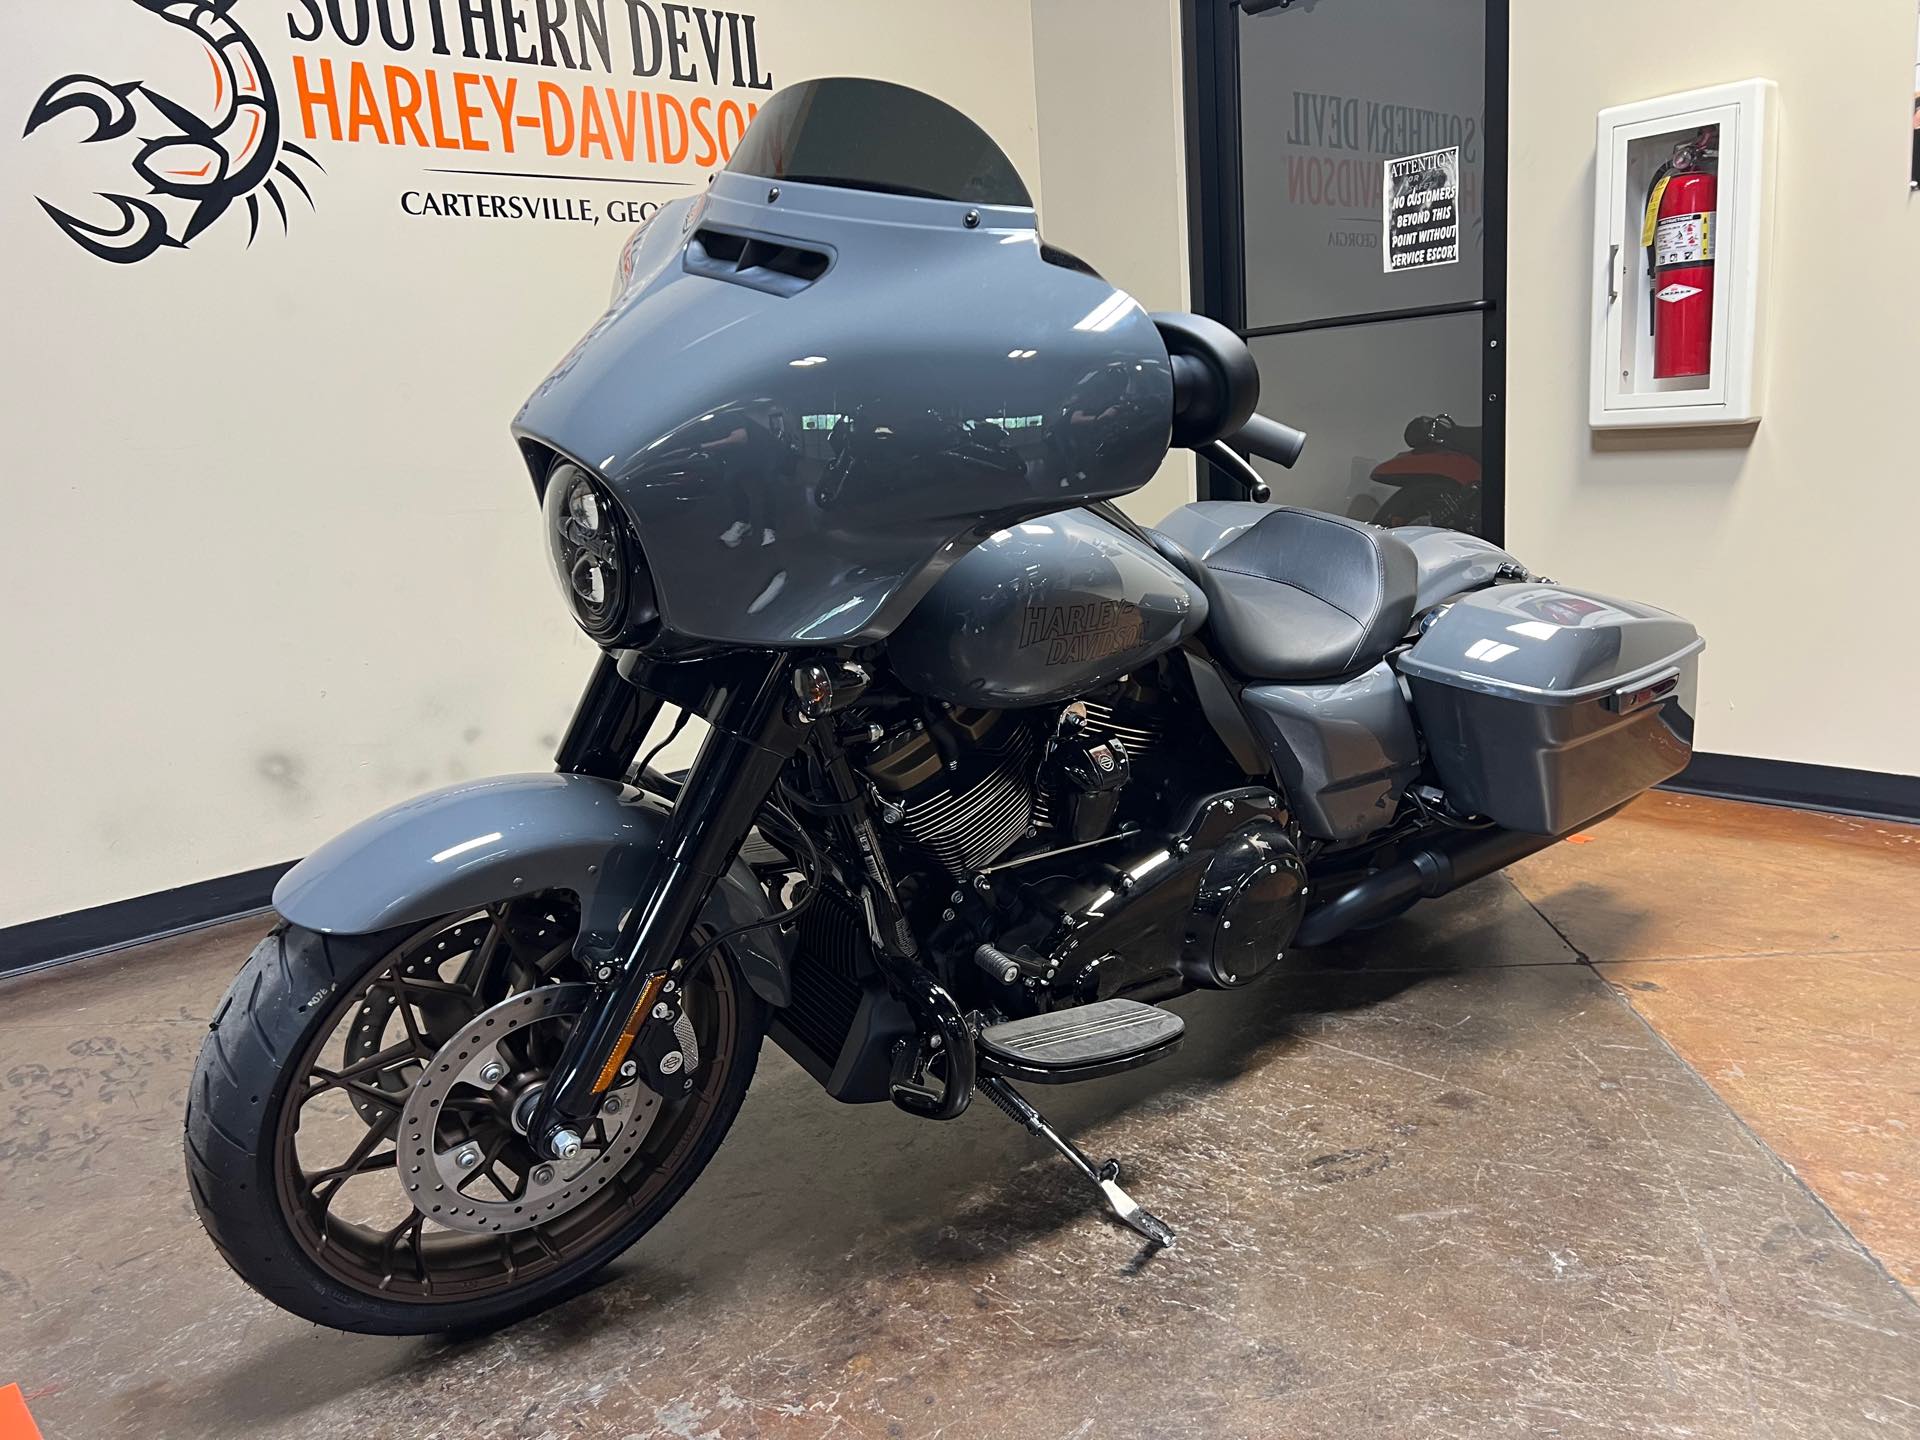 2022 Harley-Davidson Street Glide ST at Southern Devil Harley-Davidson